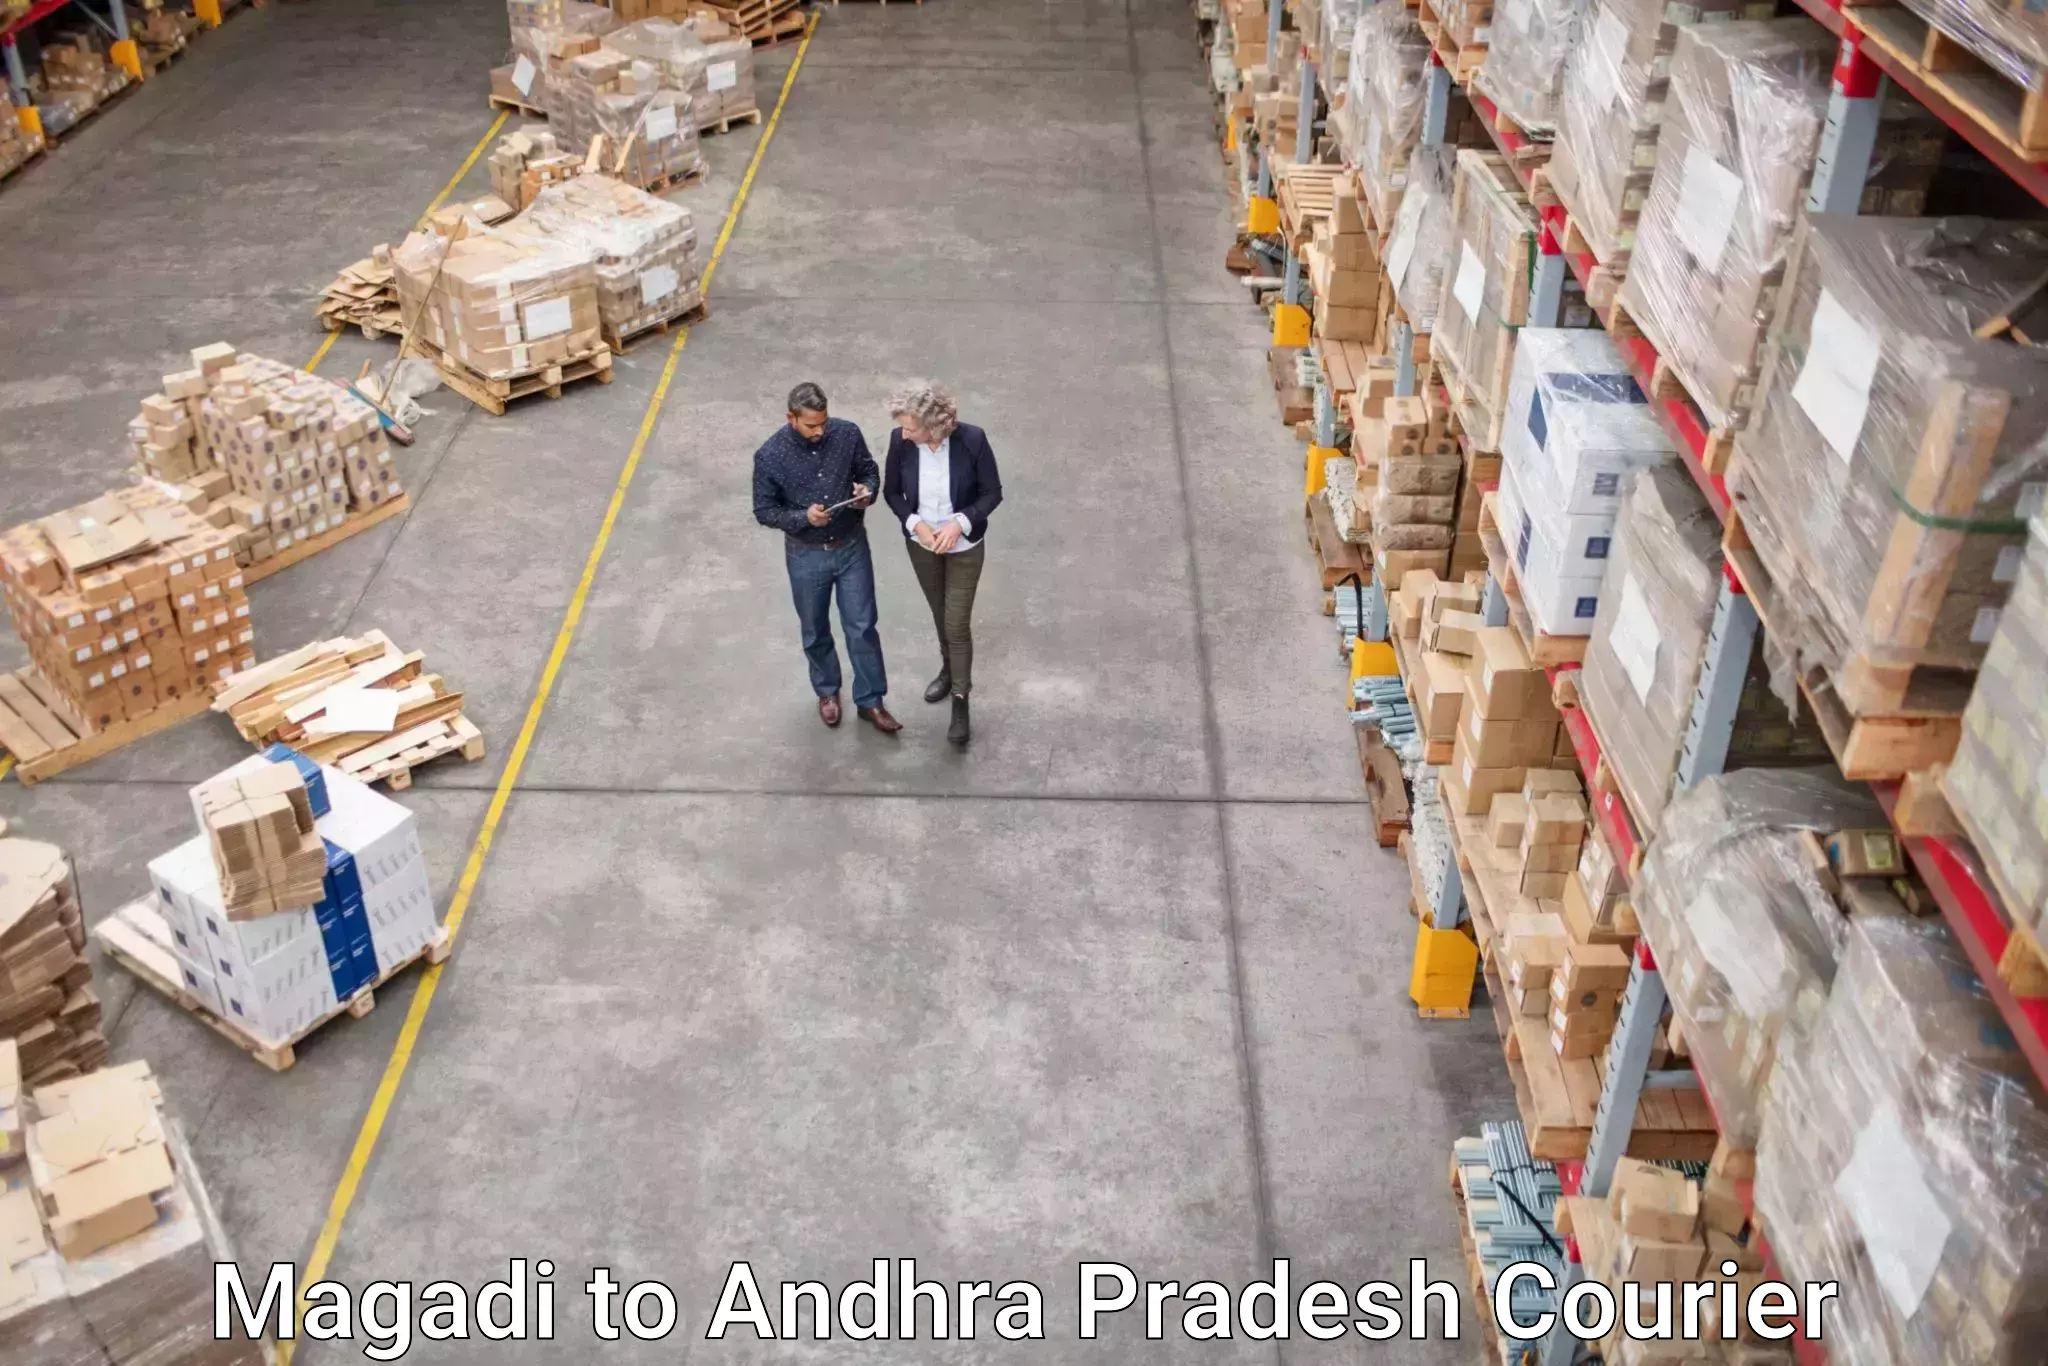 High-speed parcel service Magadi to Konthamuru